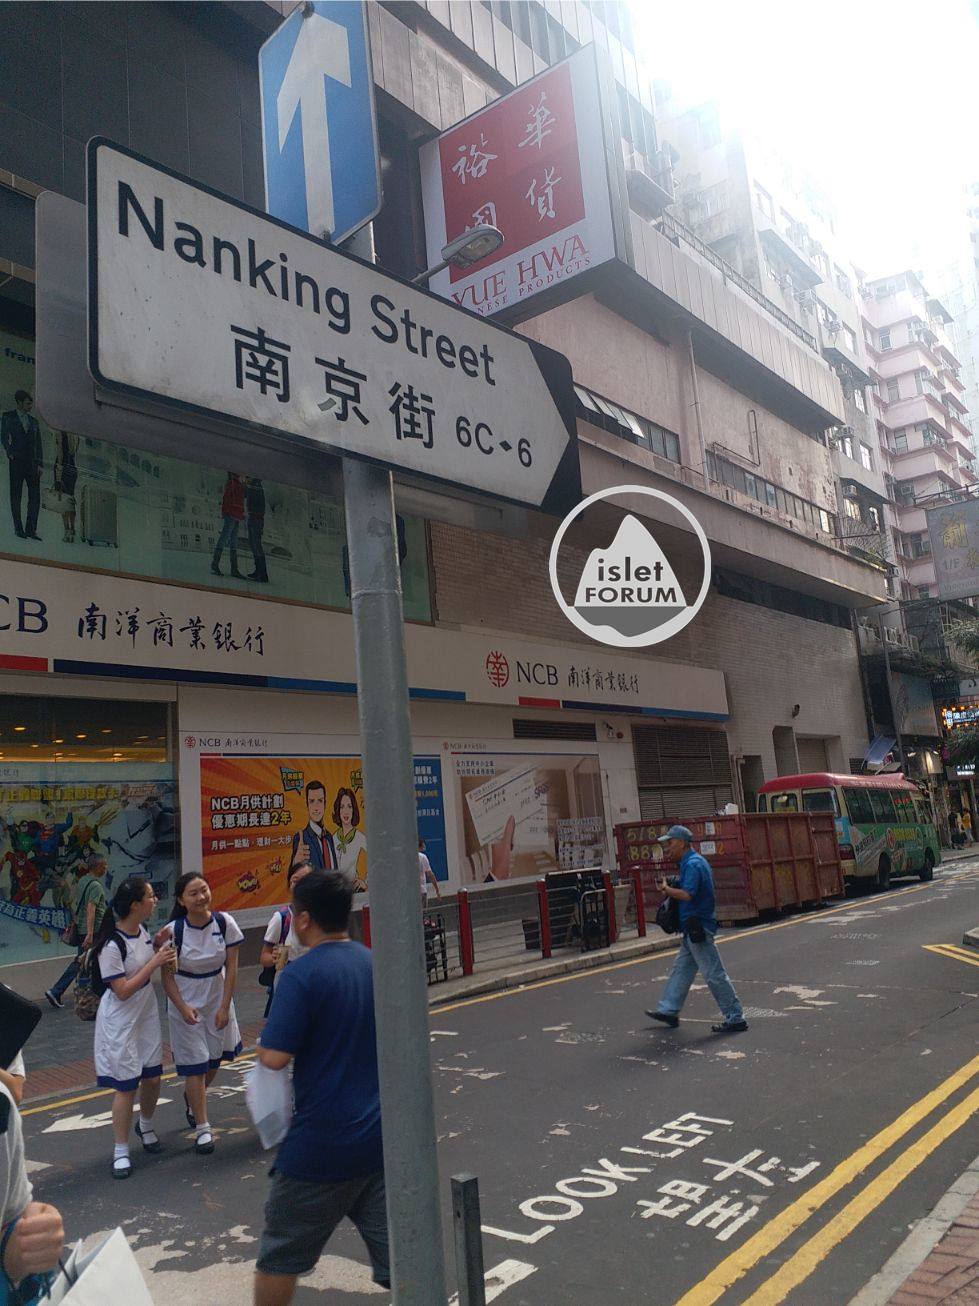 南京街 Nanking Street.jpg